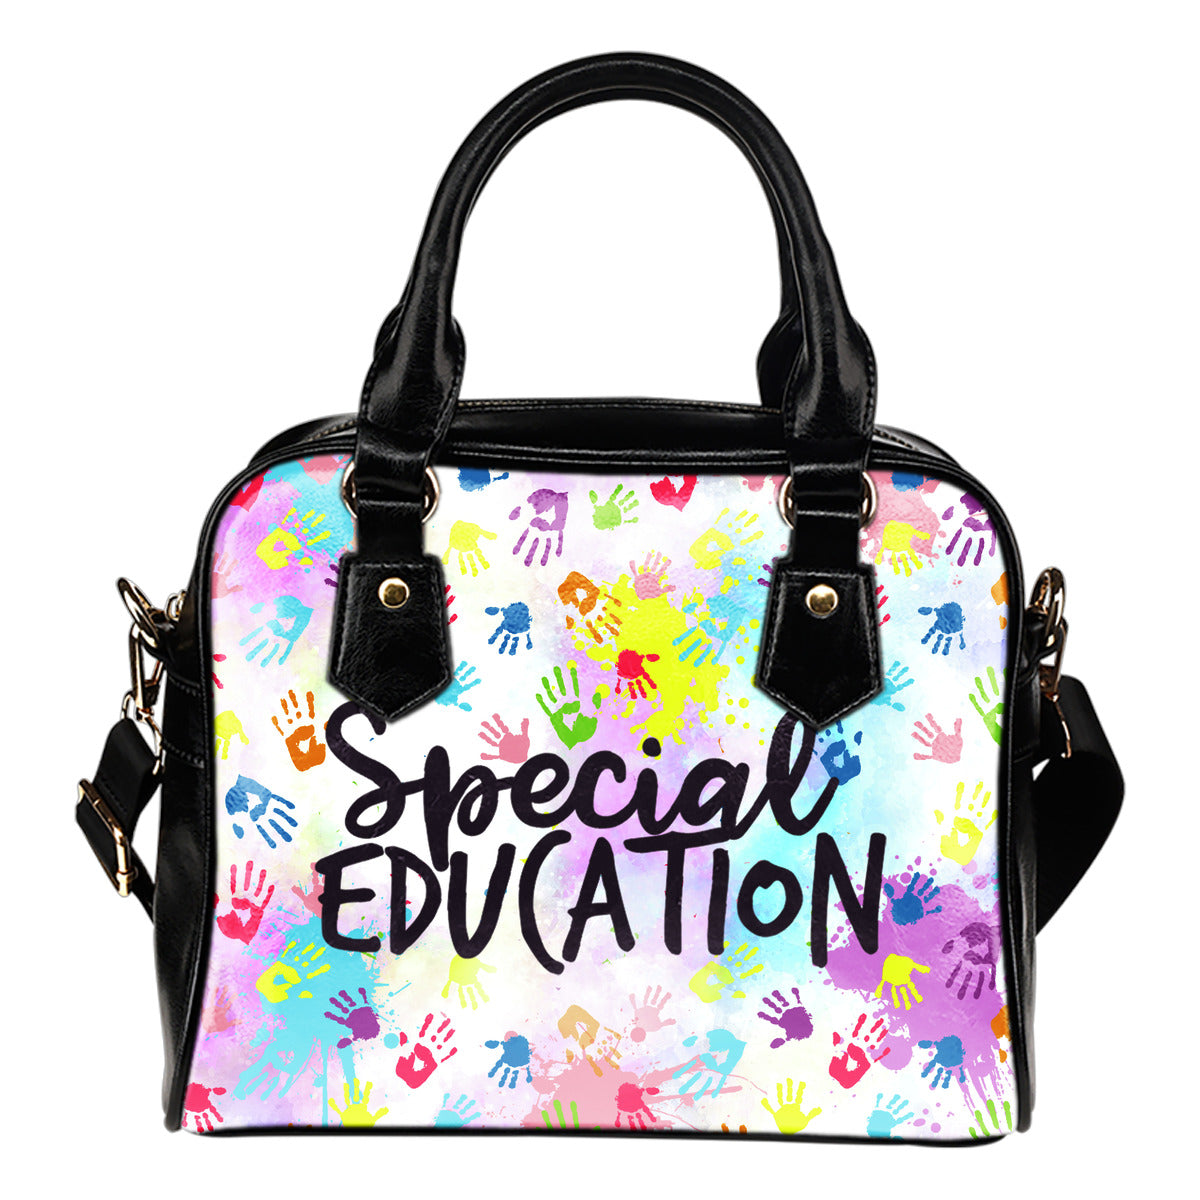 Special Education Handbag